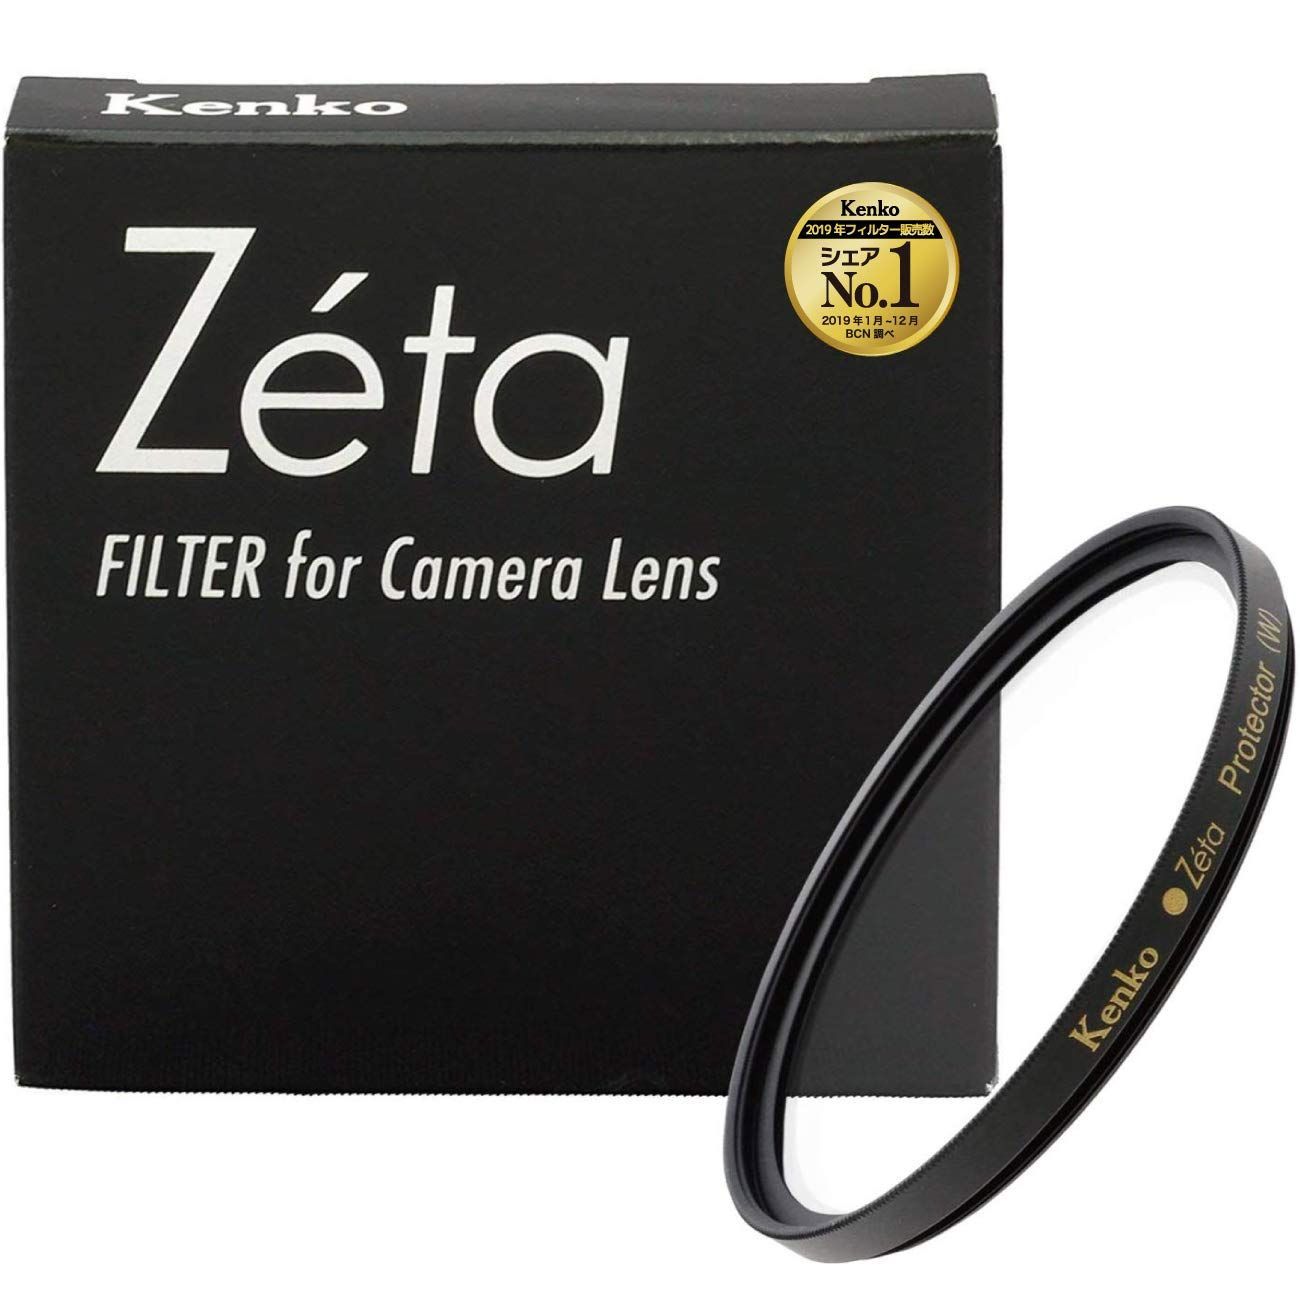 限定】Kenko レンズフィルター Zeta プロテクター 67mm レンズ保護用 